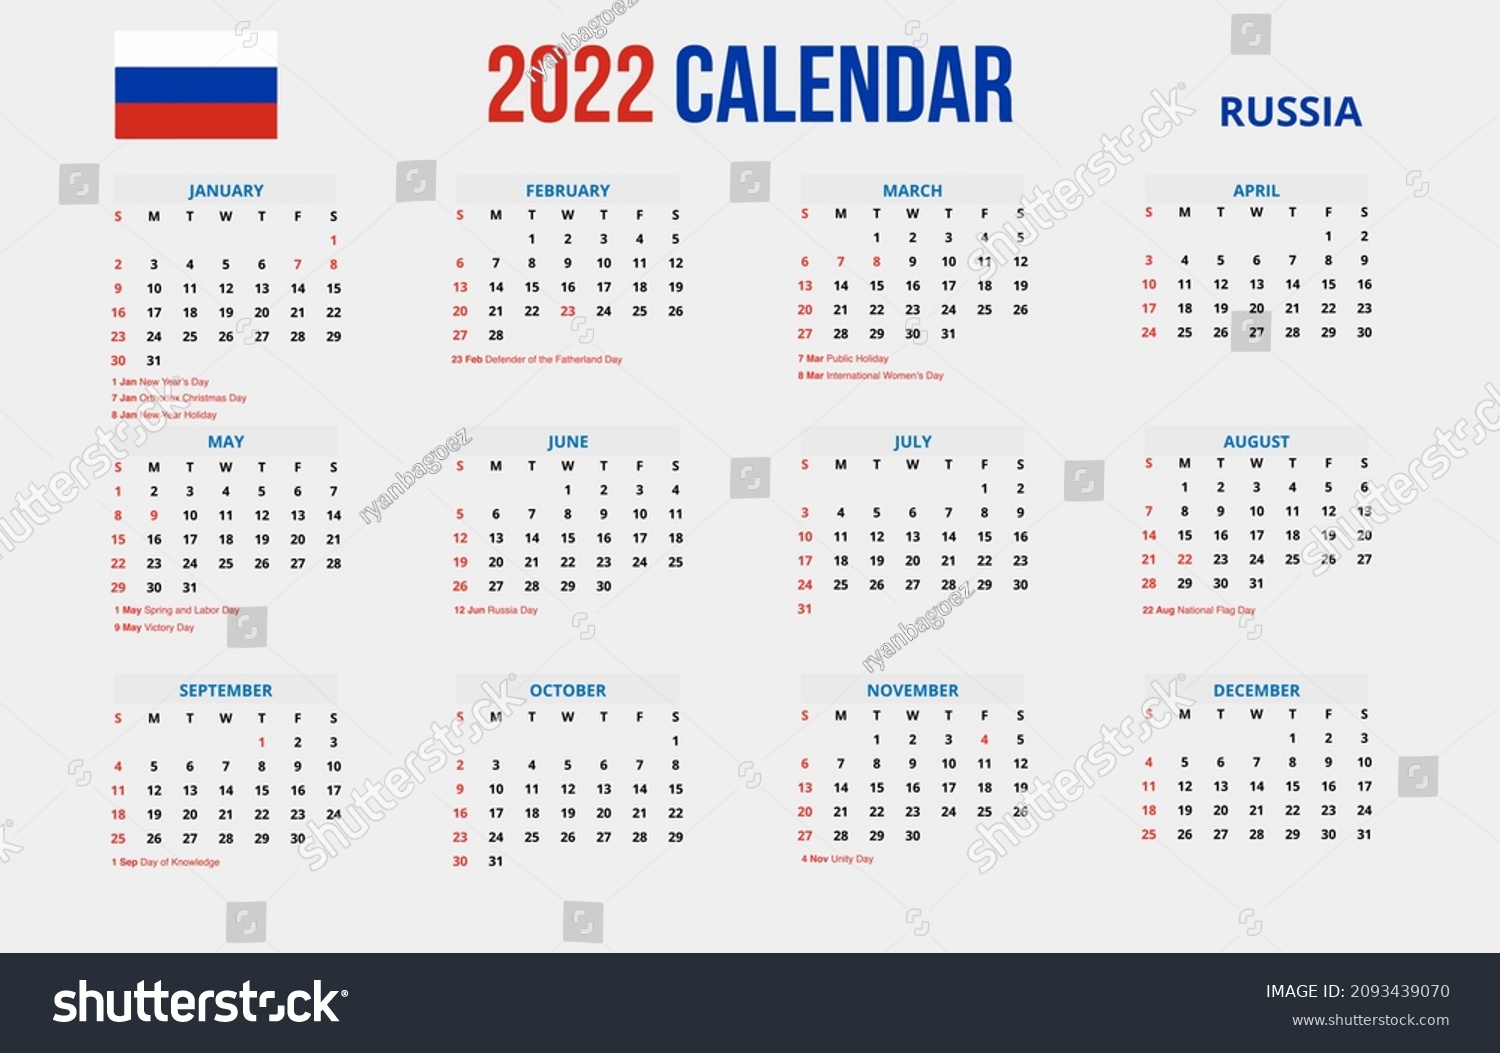 2022 New Year Simple Calendar Russia เวกเตอร์สต็อก (ปลอดค่าลิขสิทธิ์